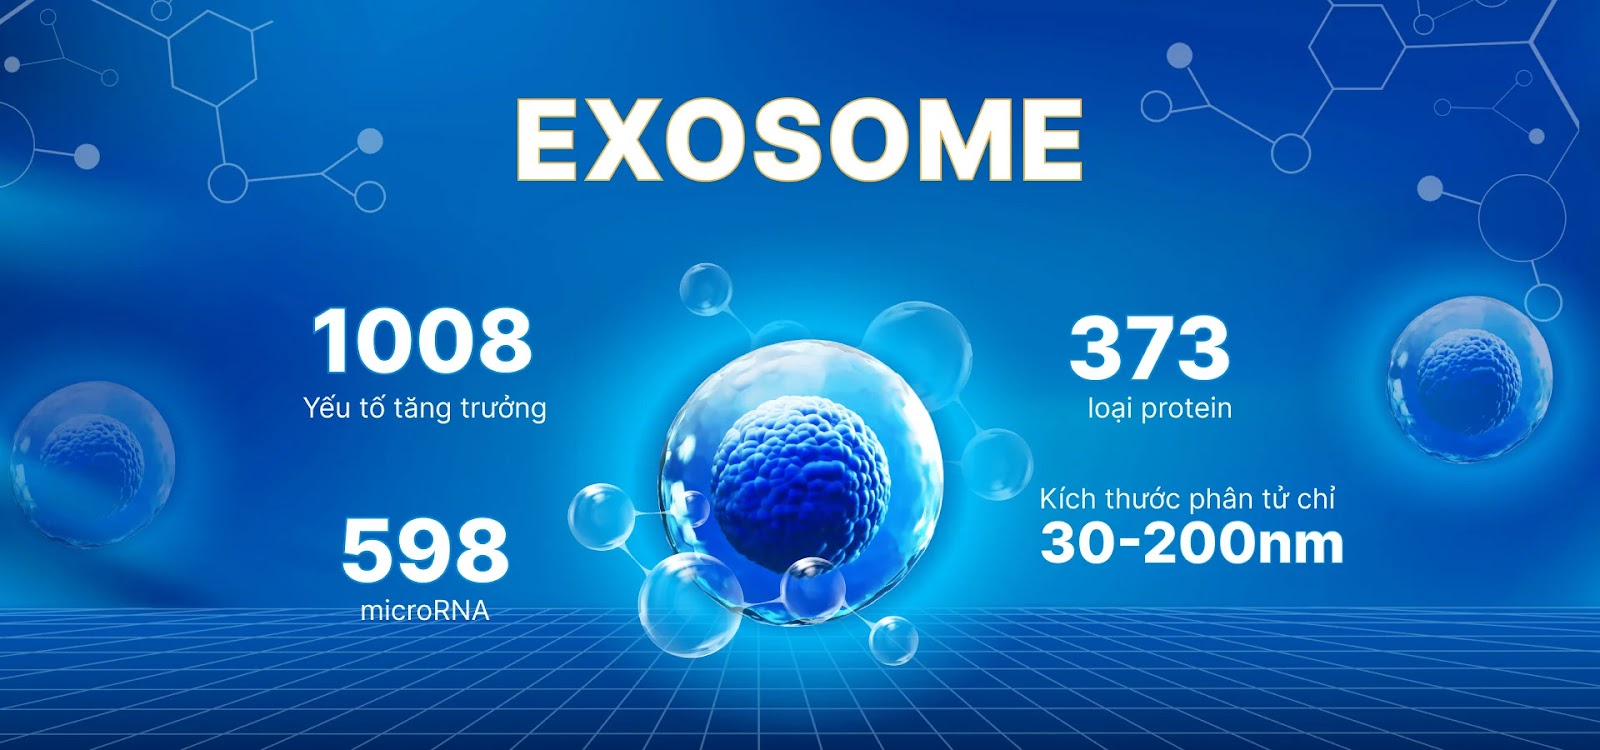 Exosome Ultra được xem là hoạt chất tiên tiến trong xu hướng thẩm mỹ hiện đại